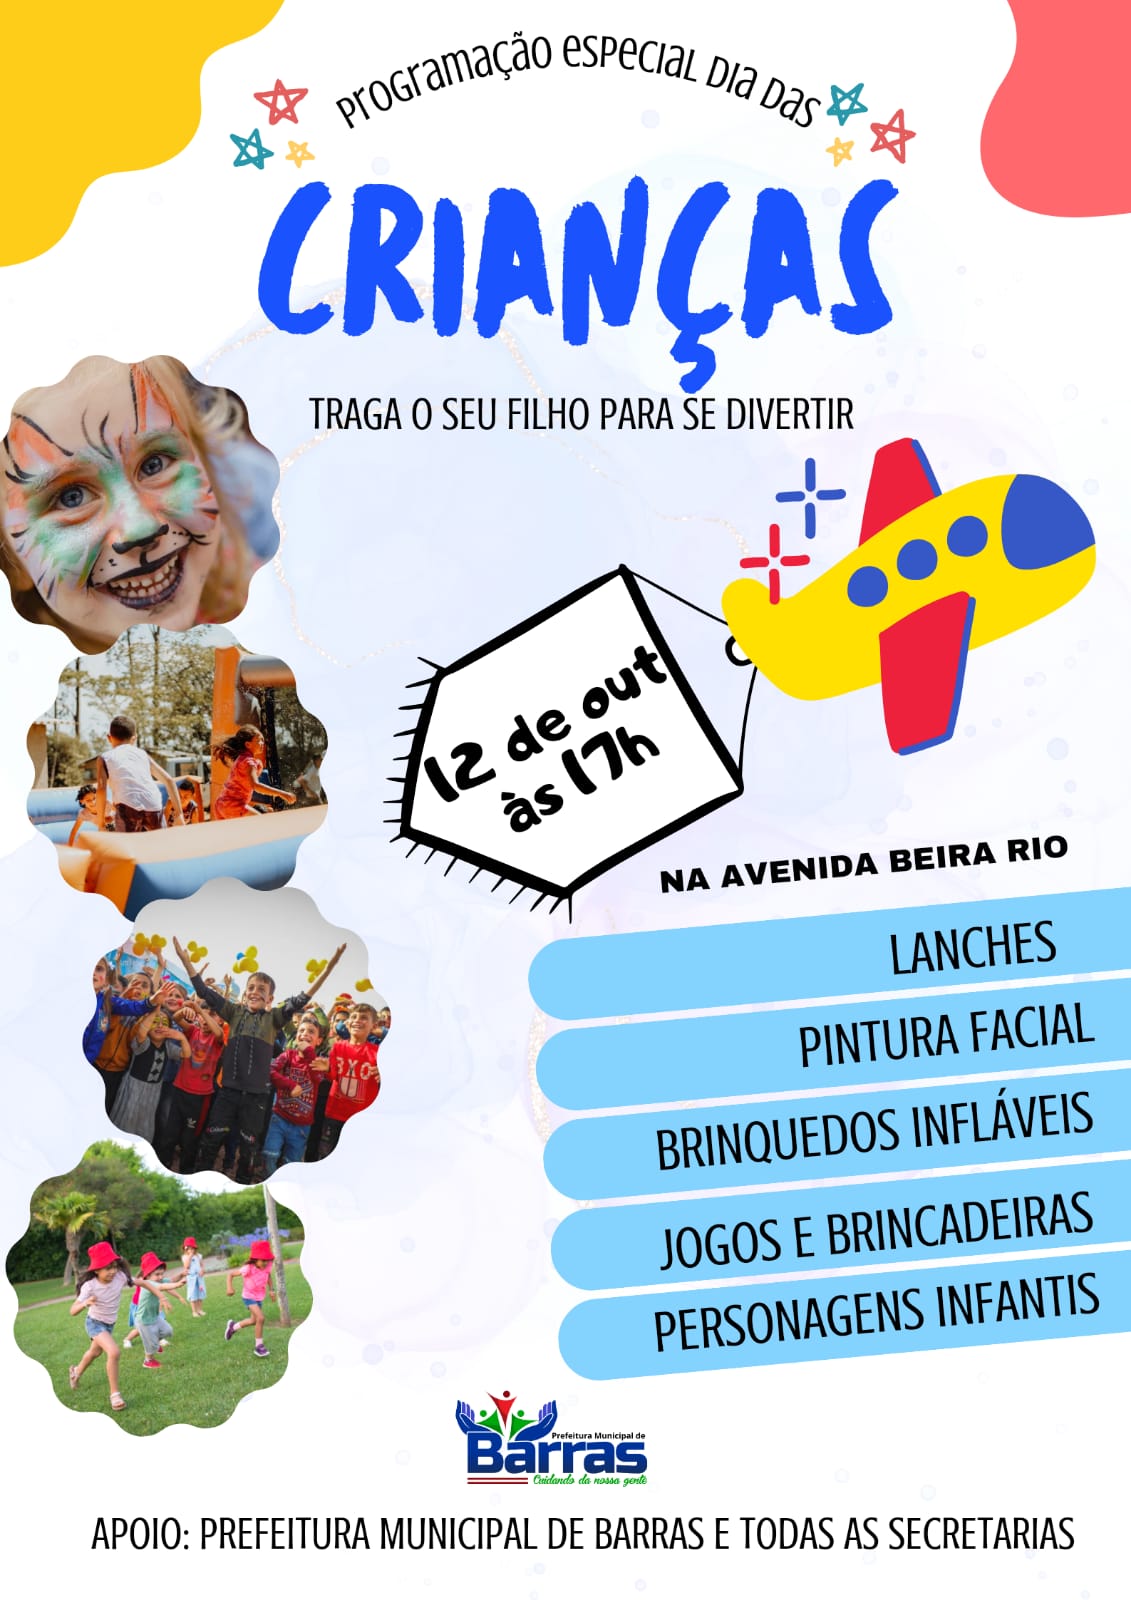 Dia da Criança na Avenida Beira Rio em Barras vai ser só alegria. Venha participar